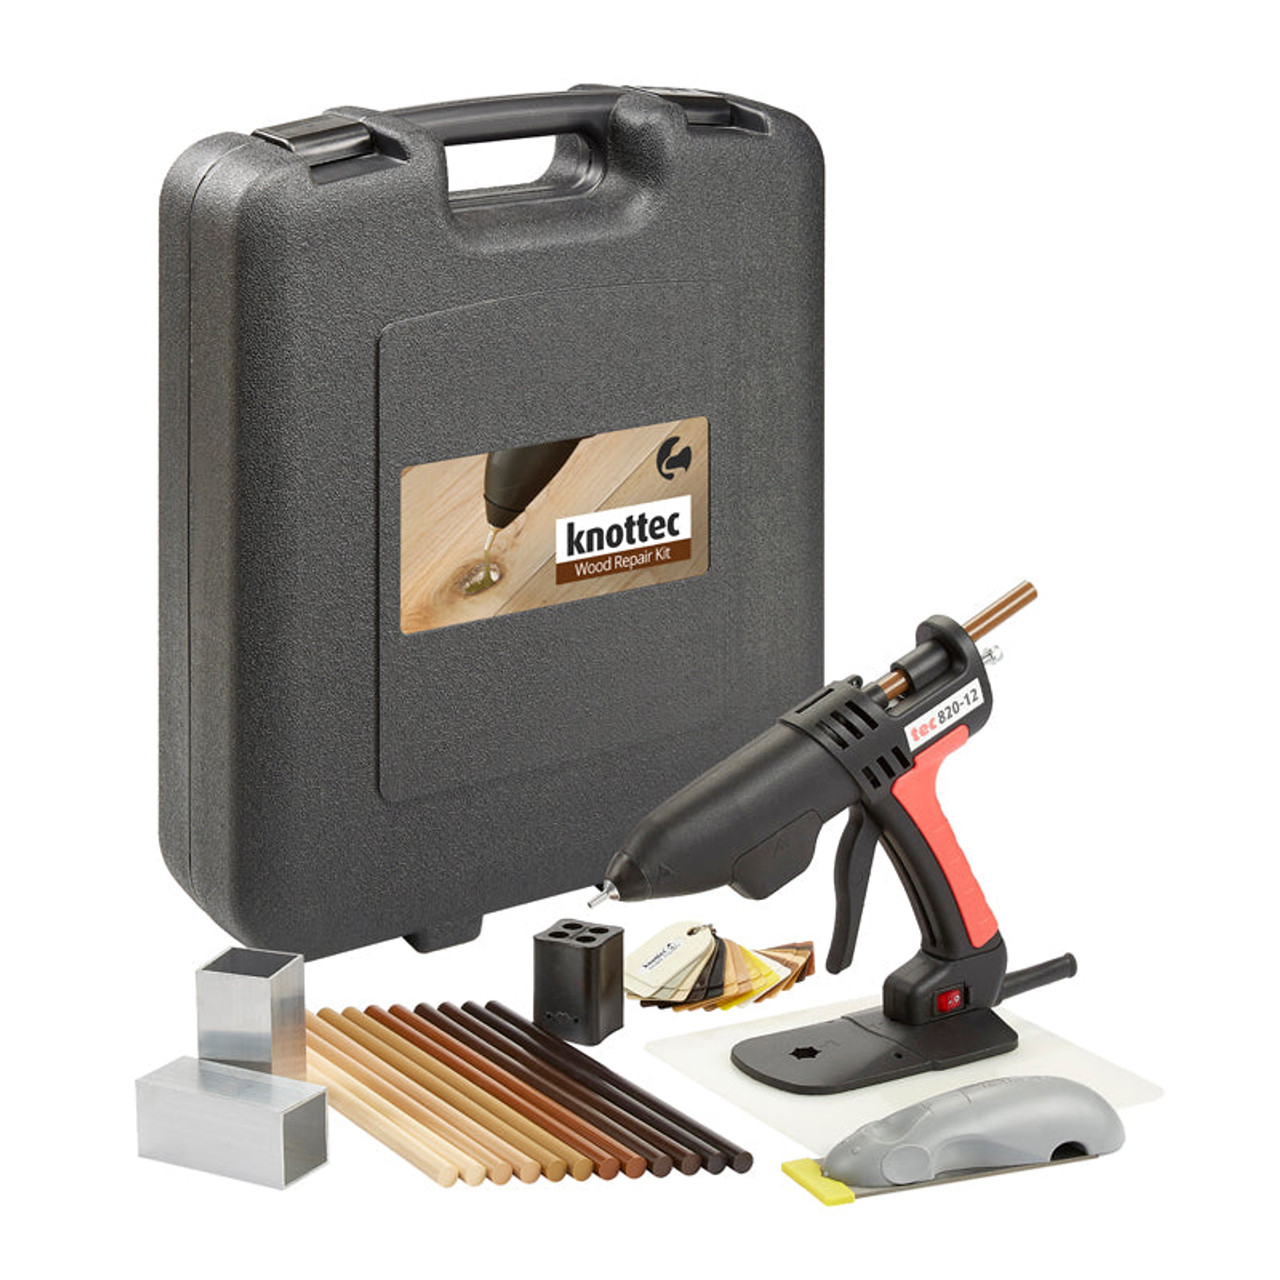 KNOTTEC Applicator | 820-12 Corded Applicator Glue Gun Kit for Professional Wood Repair